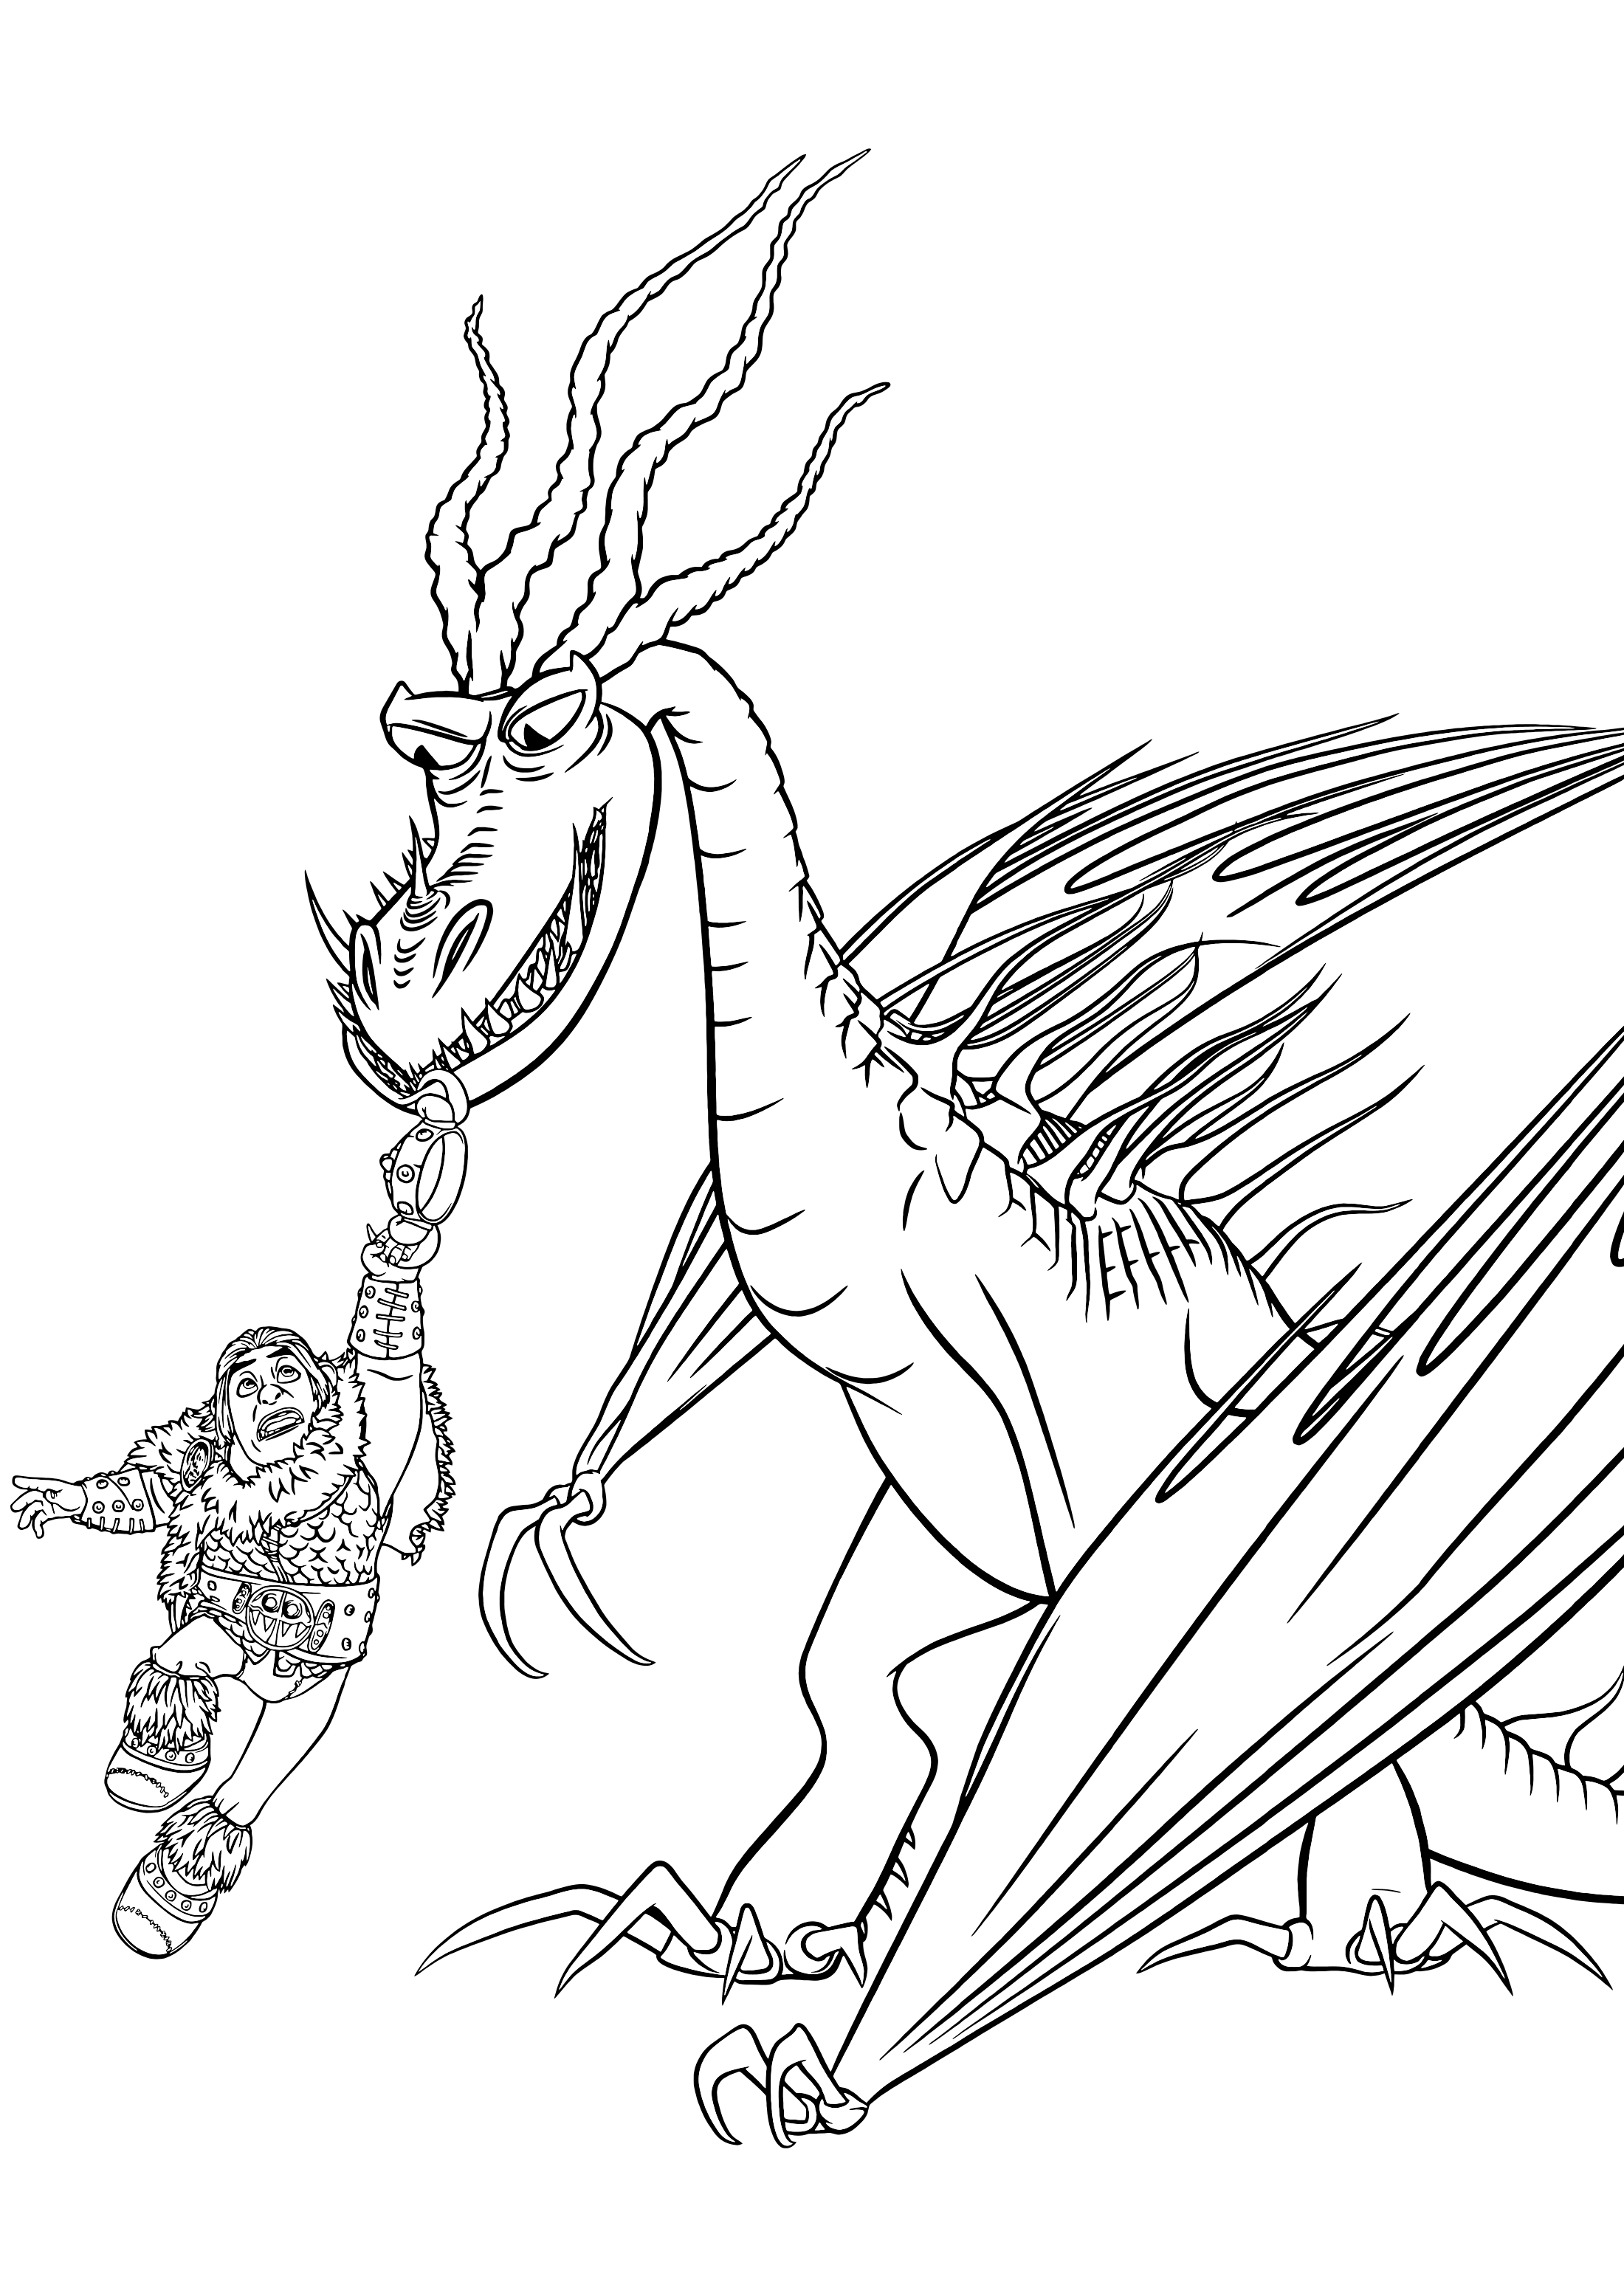 Детские раскраски по мультику Как приручить дракона, дракон Ужасное Чудовище Кривоклык и всадник Сморкла